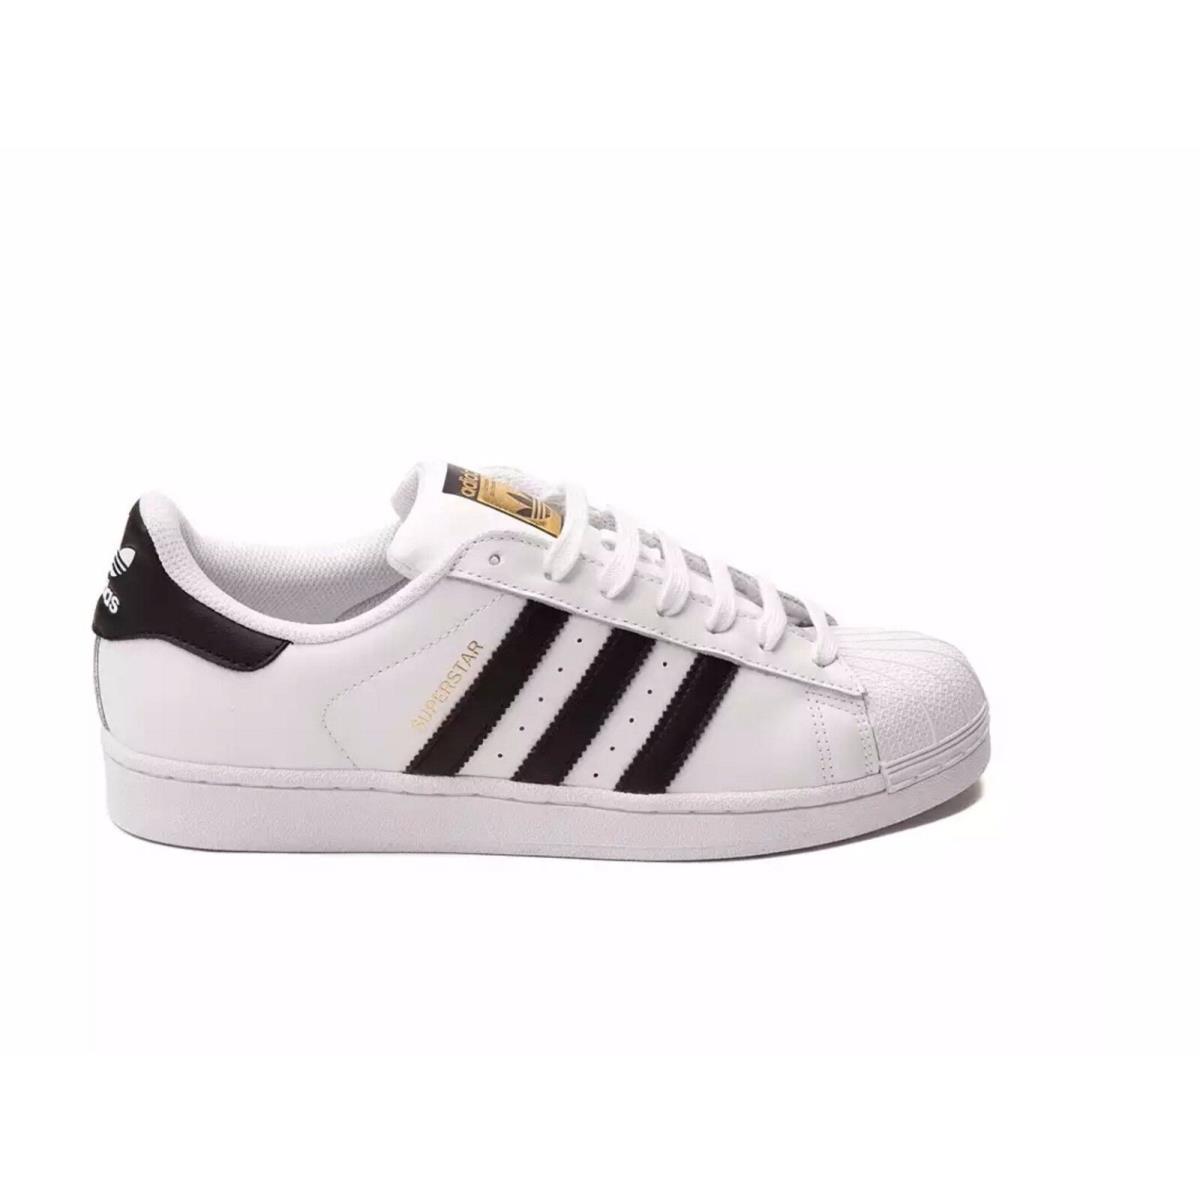 Mens Adidas Originals Superstar II 2 Shelltoe Athletic EG4958 All Sizes